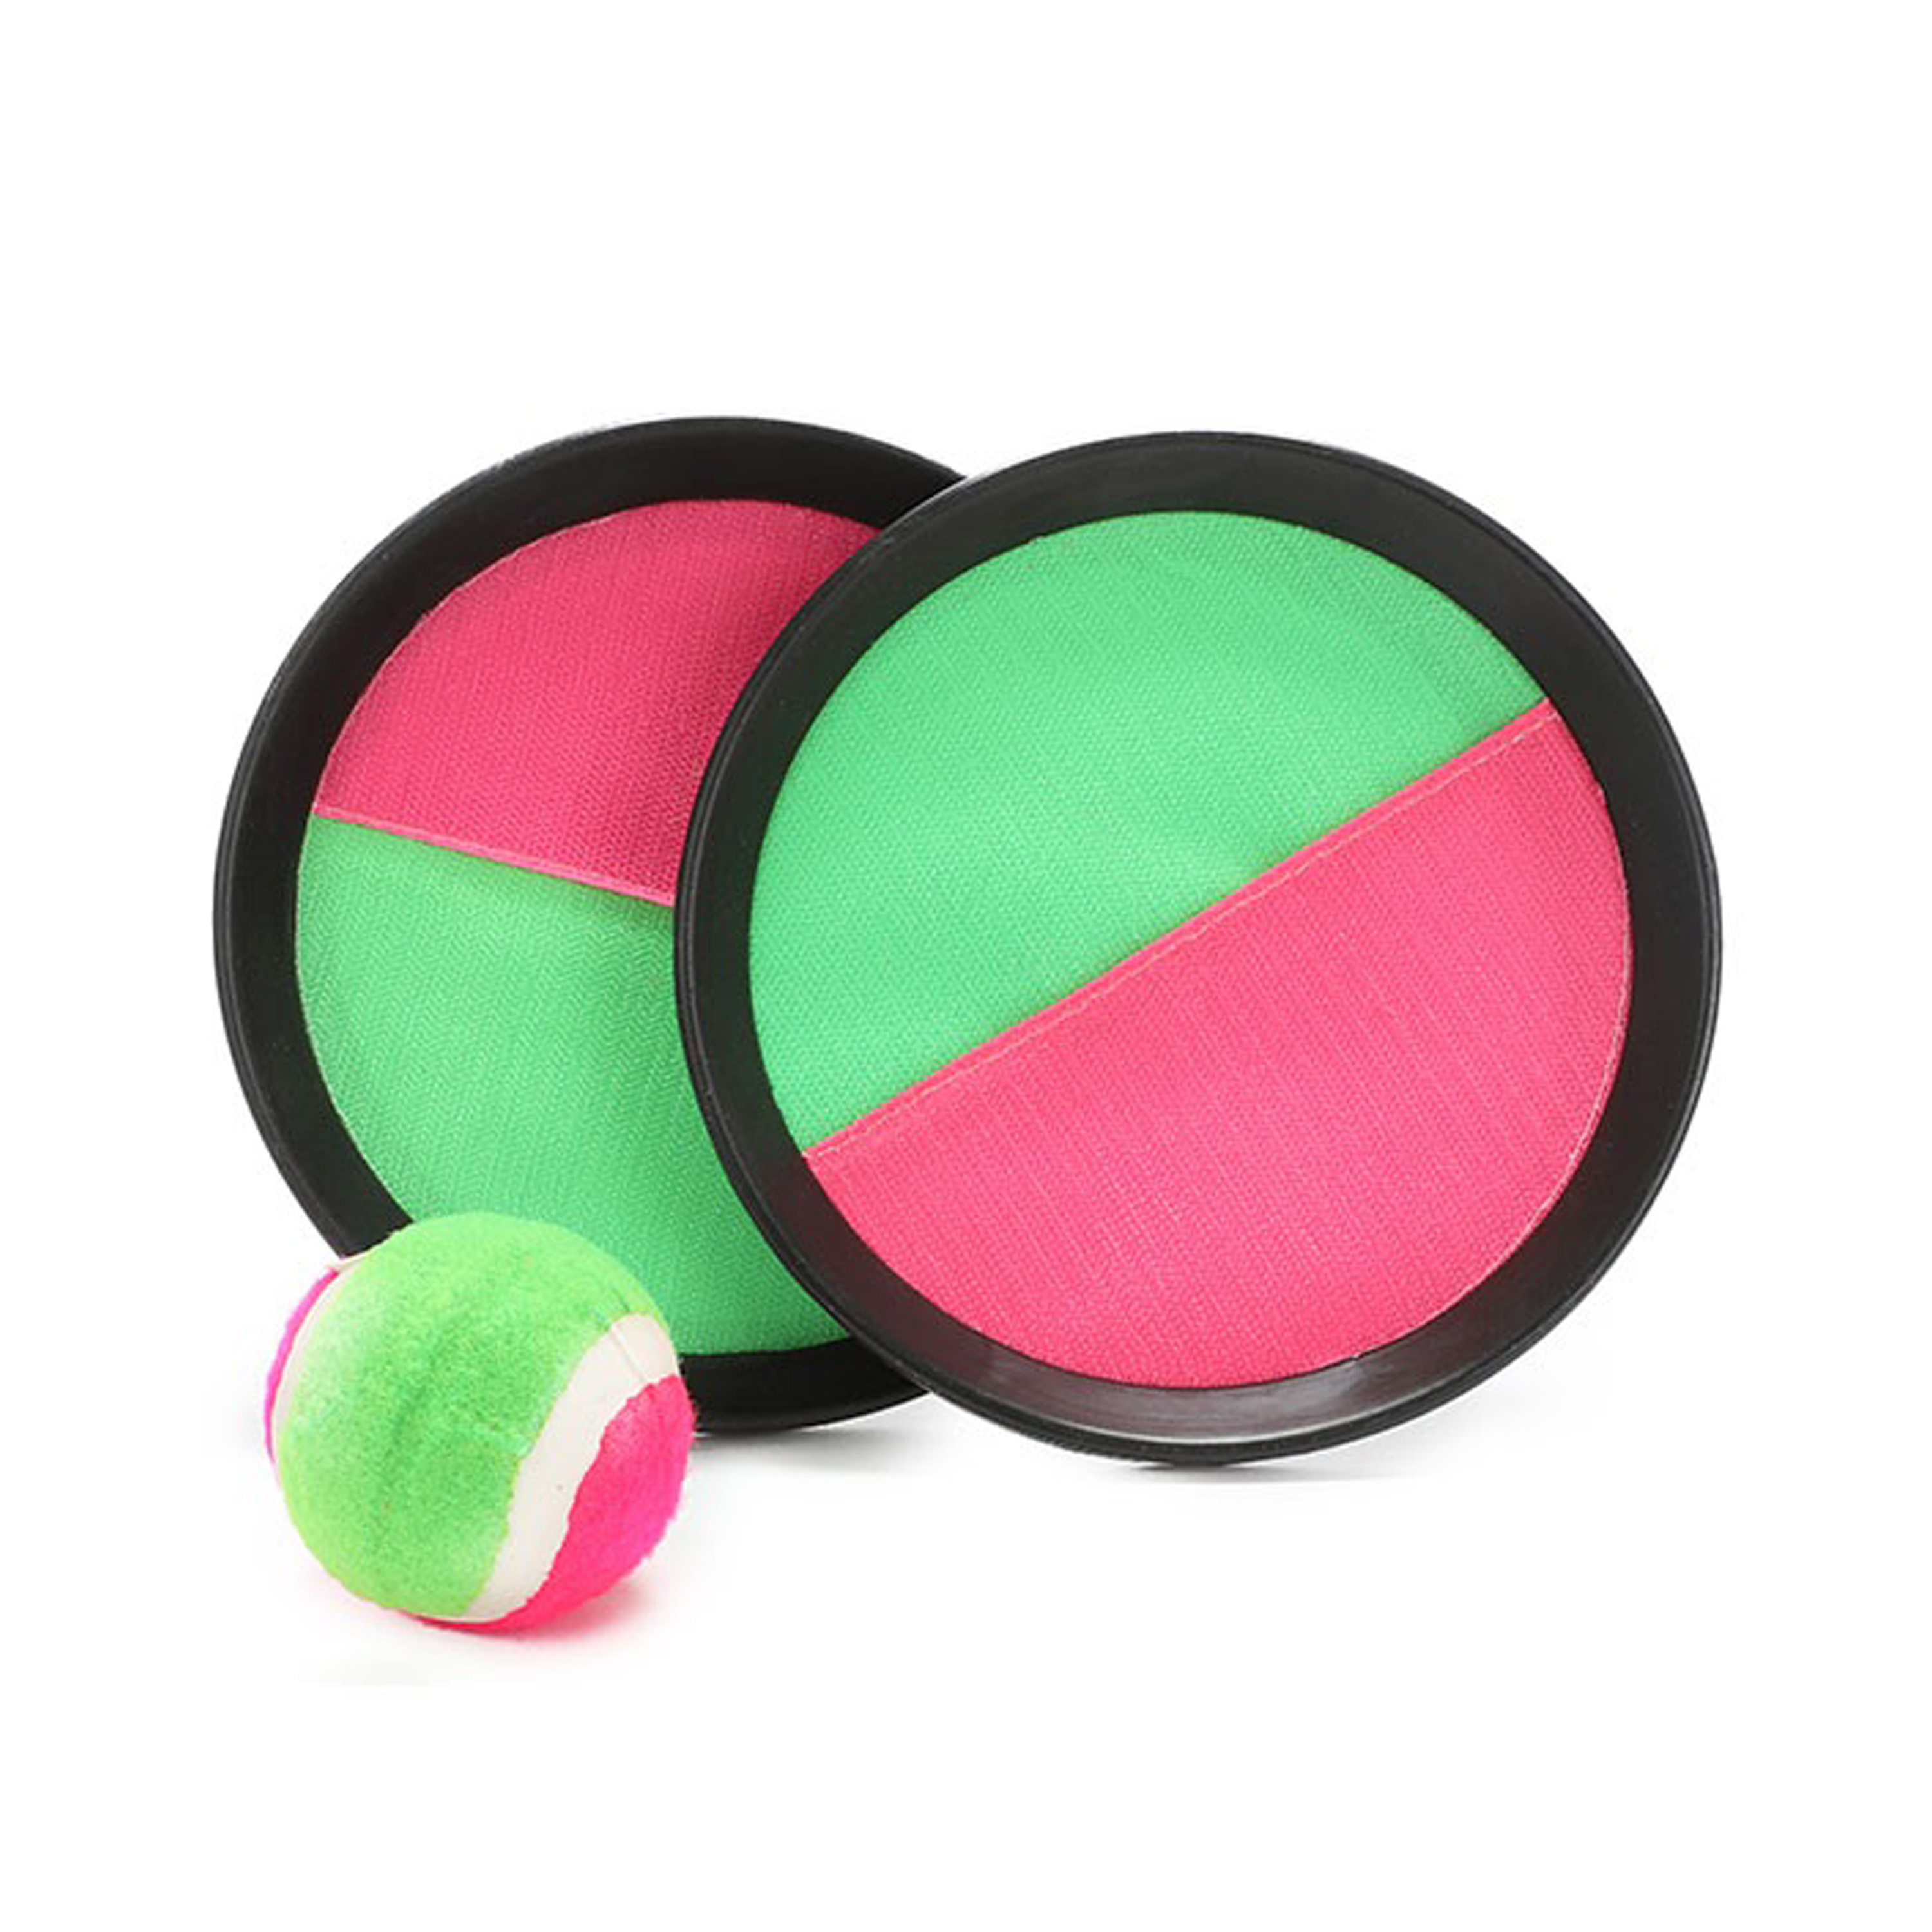 Vangbalspel met klittenband - groen/roze - 2 schilden en bal - buiten/strand spellen -